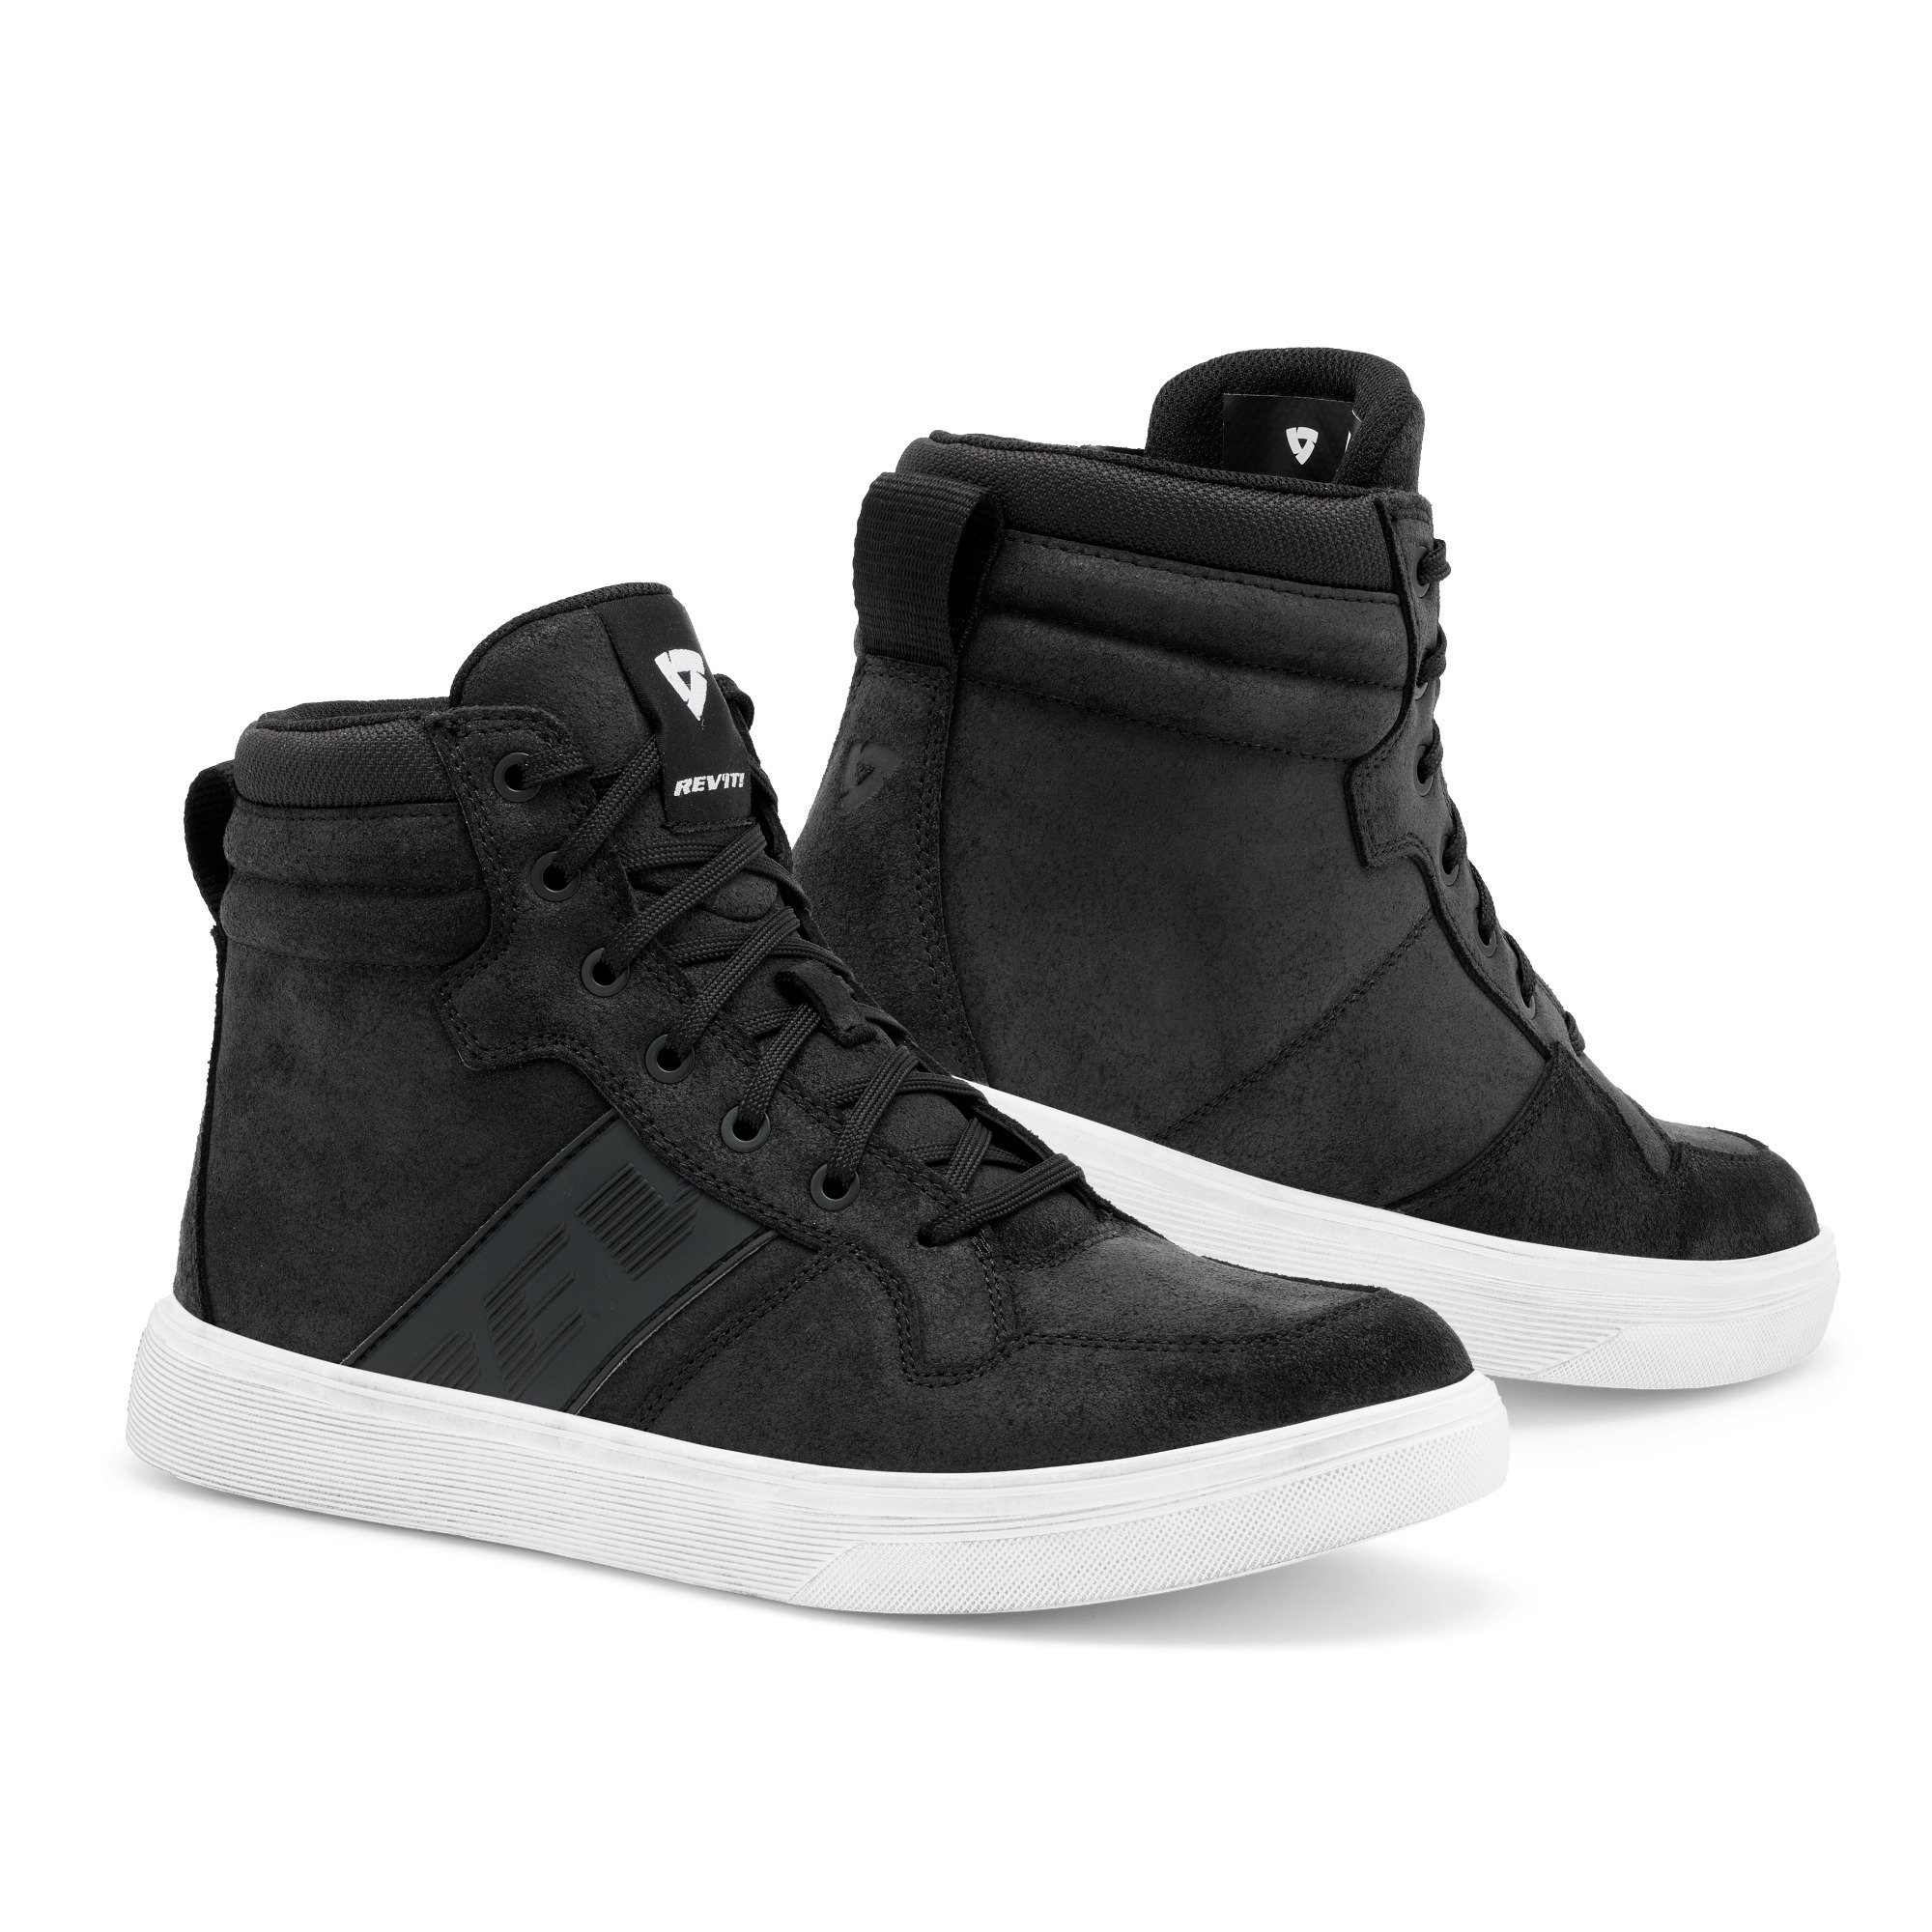 Image of REV'IT! Kick Shoes Black White Size 45 EN